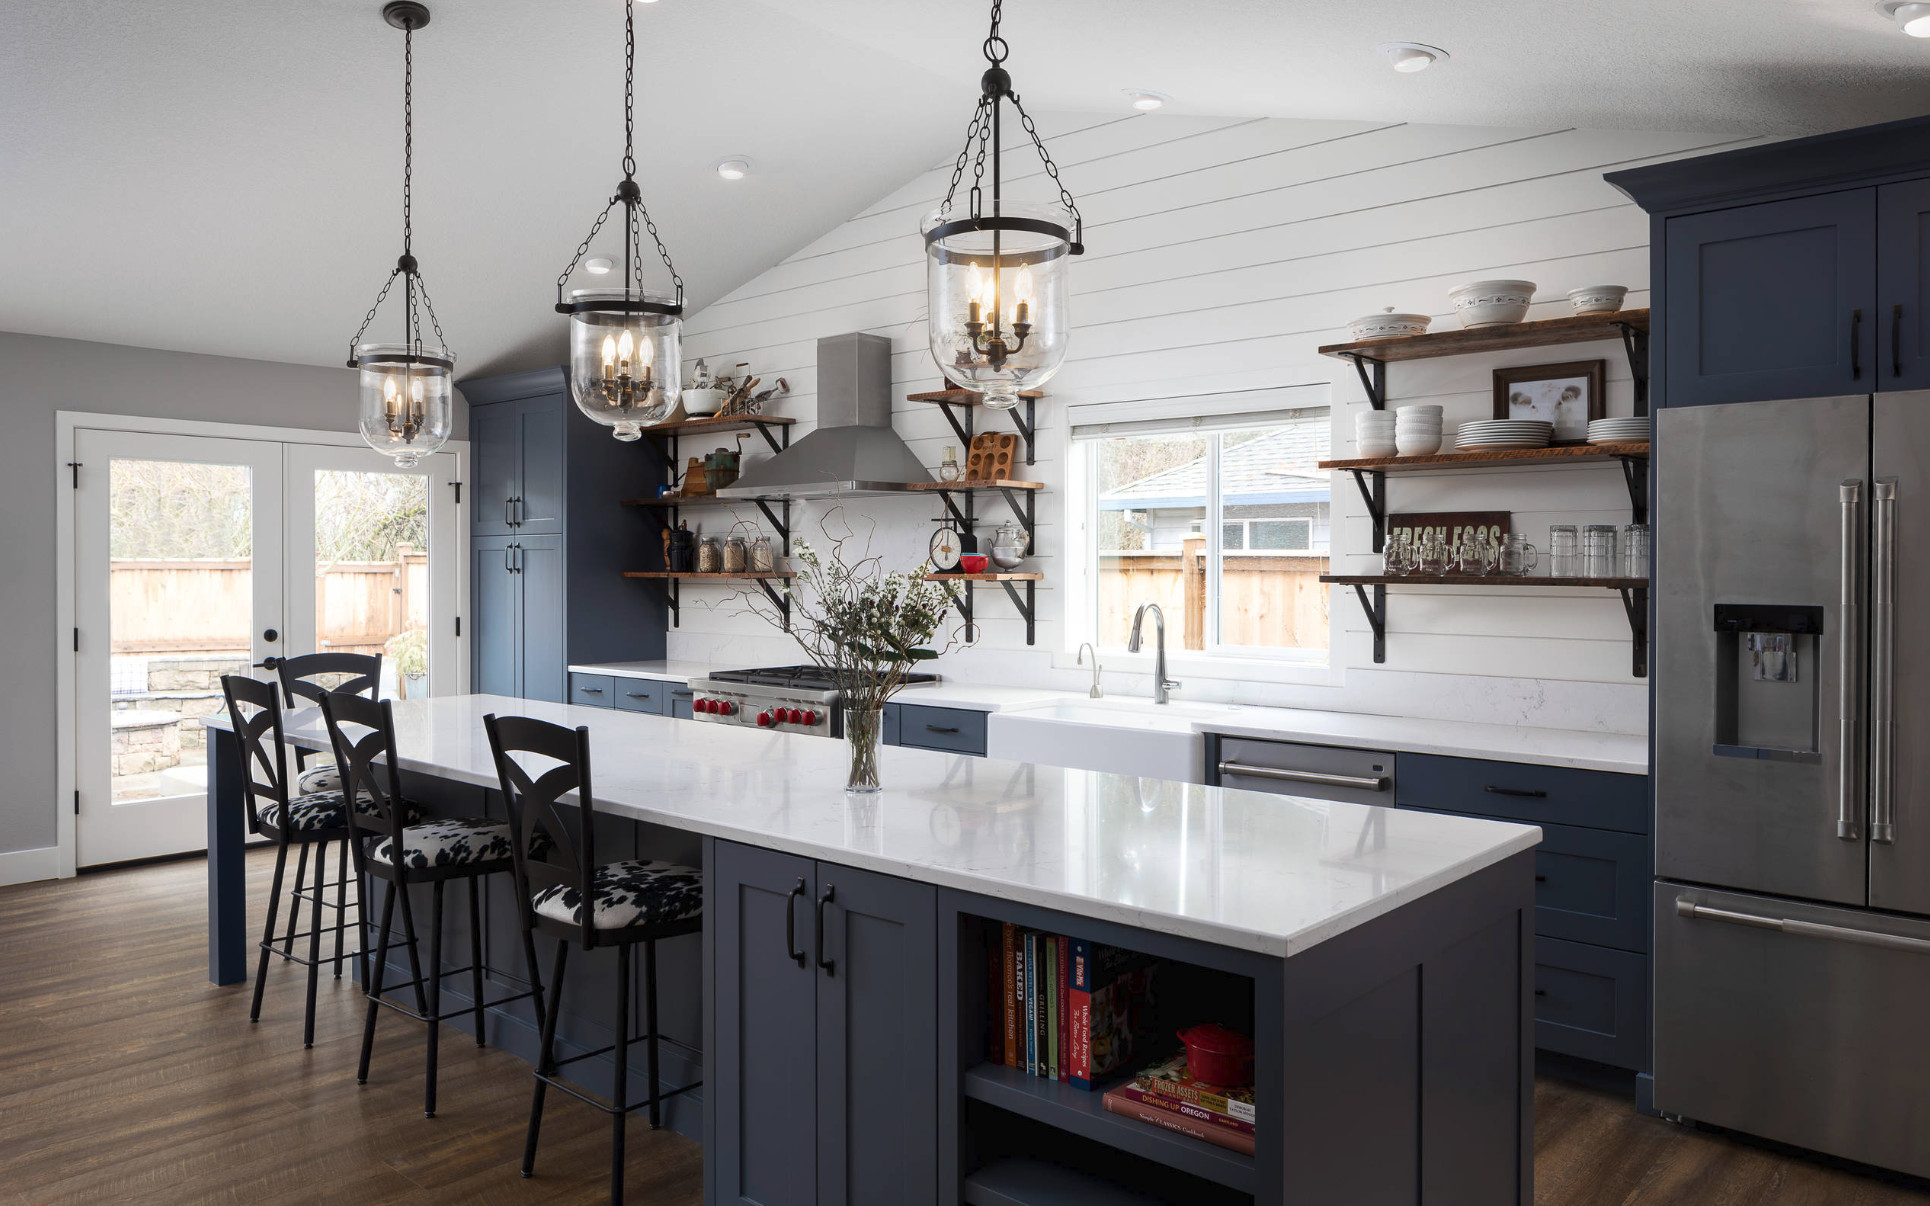 Modern Farmhouse Kitchen Decor
 Here Are 15 Modern Farmhouse Kitchen Ideas to Inspire You